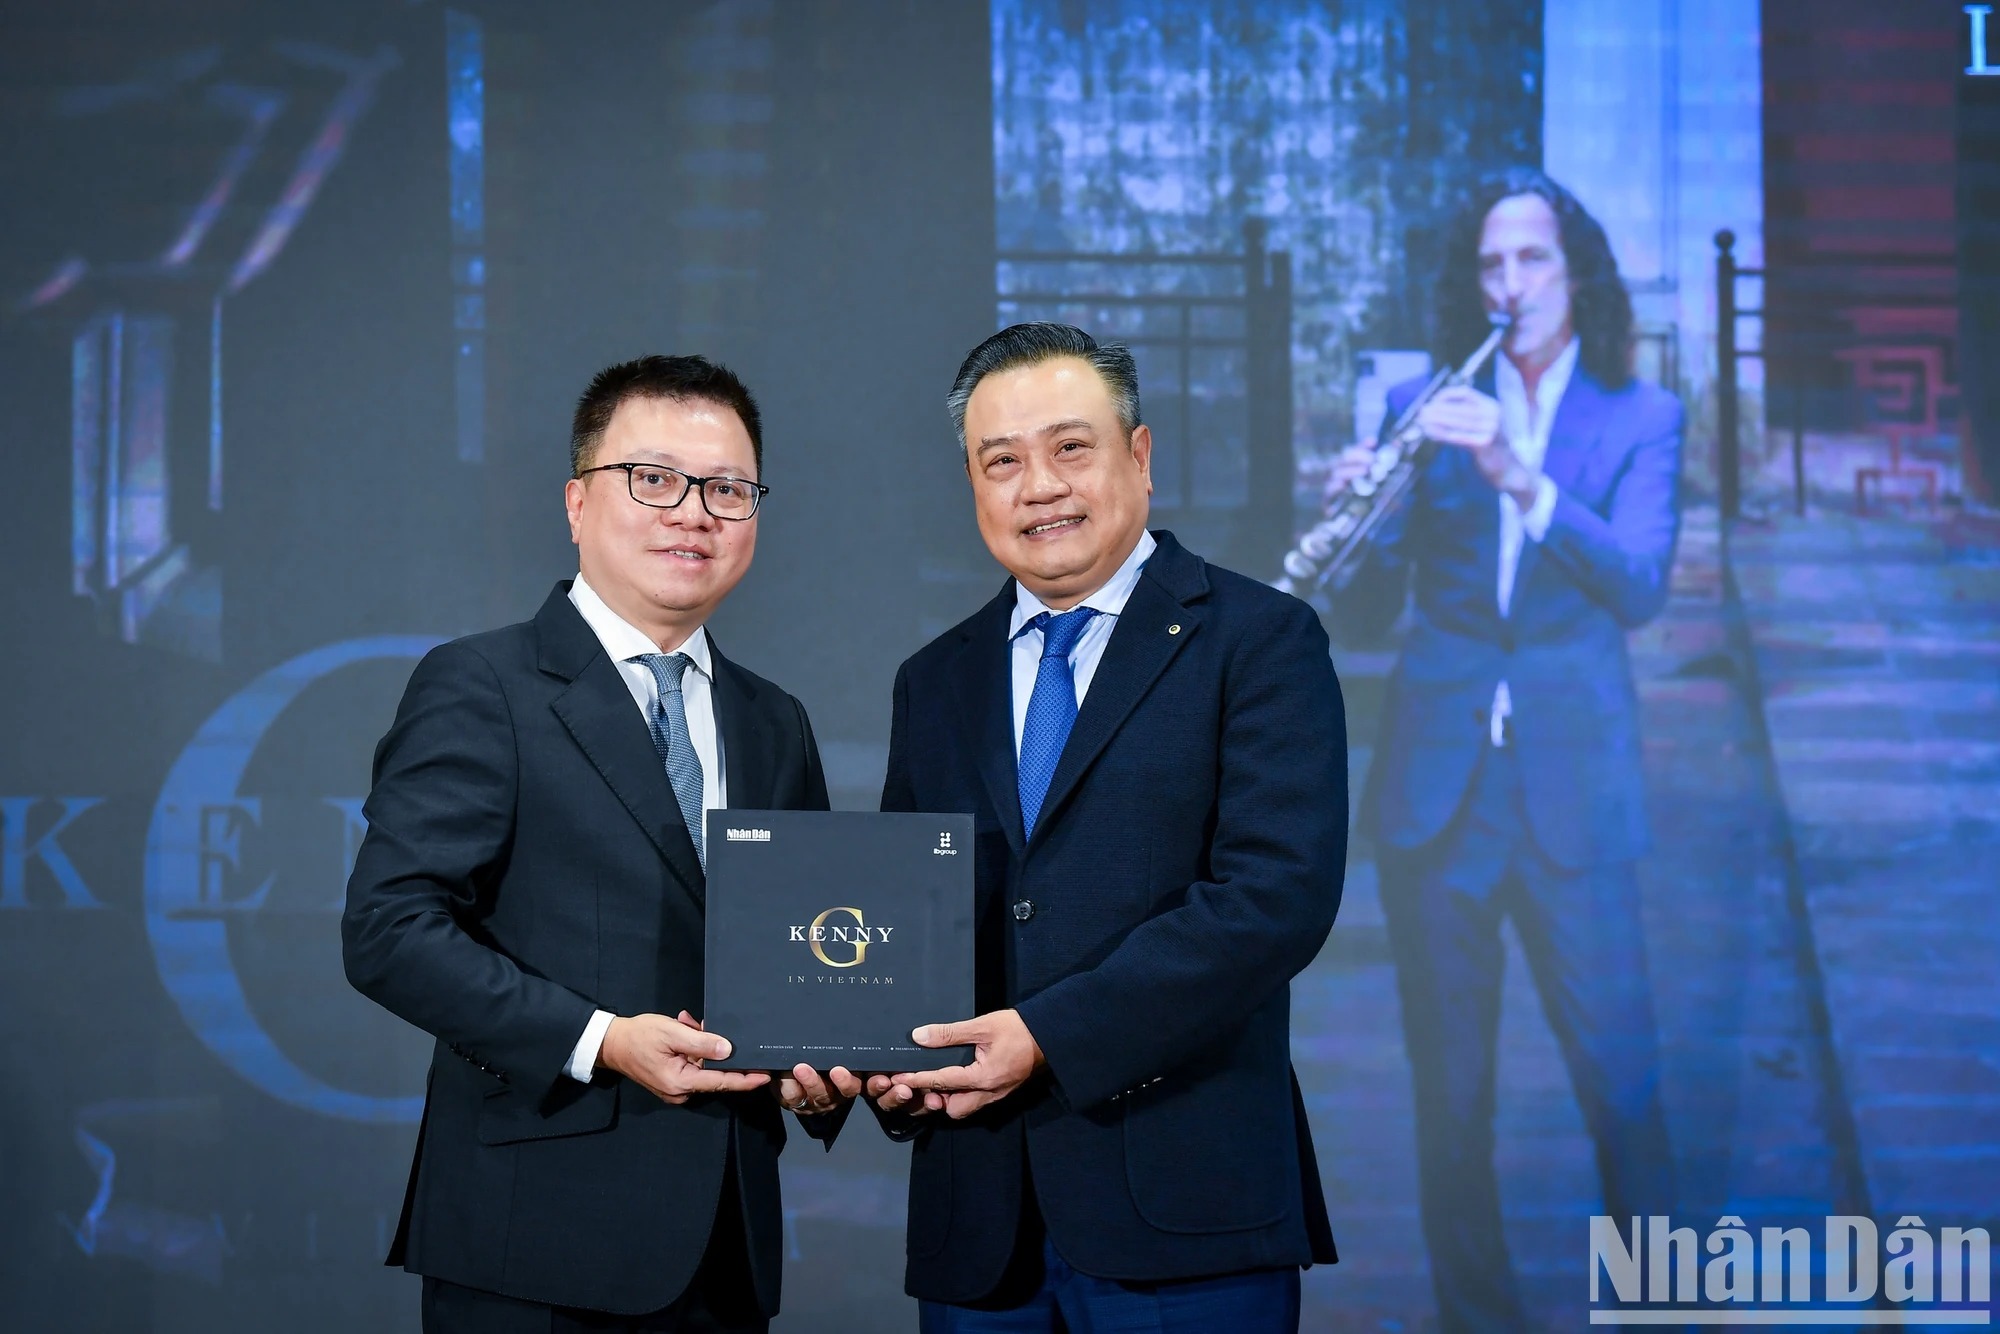 Ông Lê Quốc Minh trao tặng MV “Going Home” cho lãnh đạo thành phố Hà Nội.